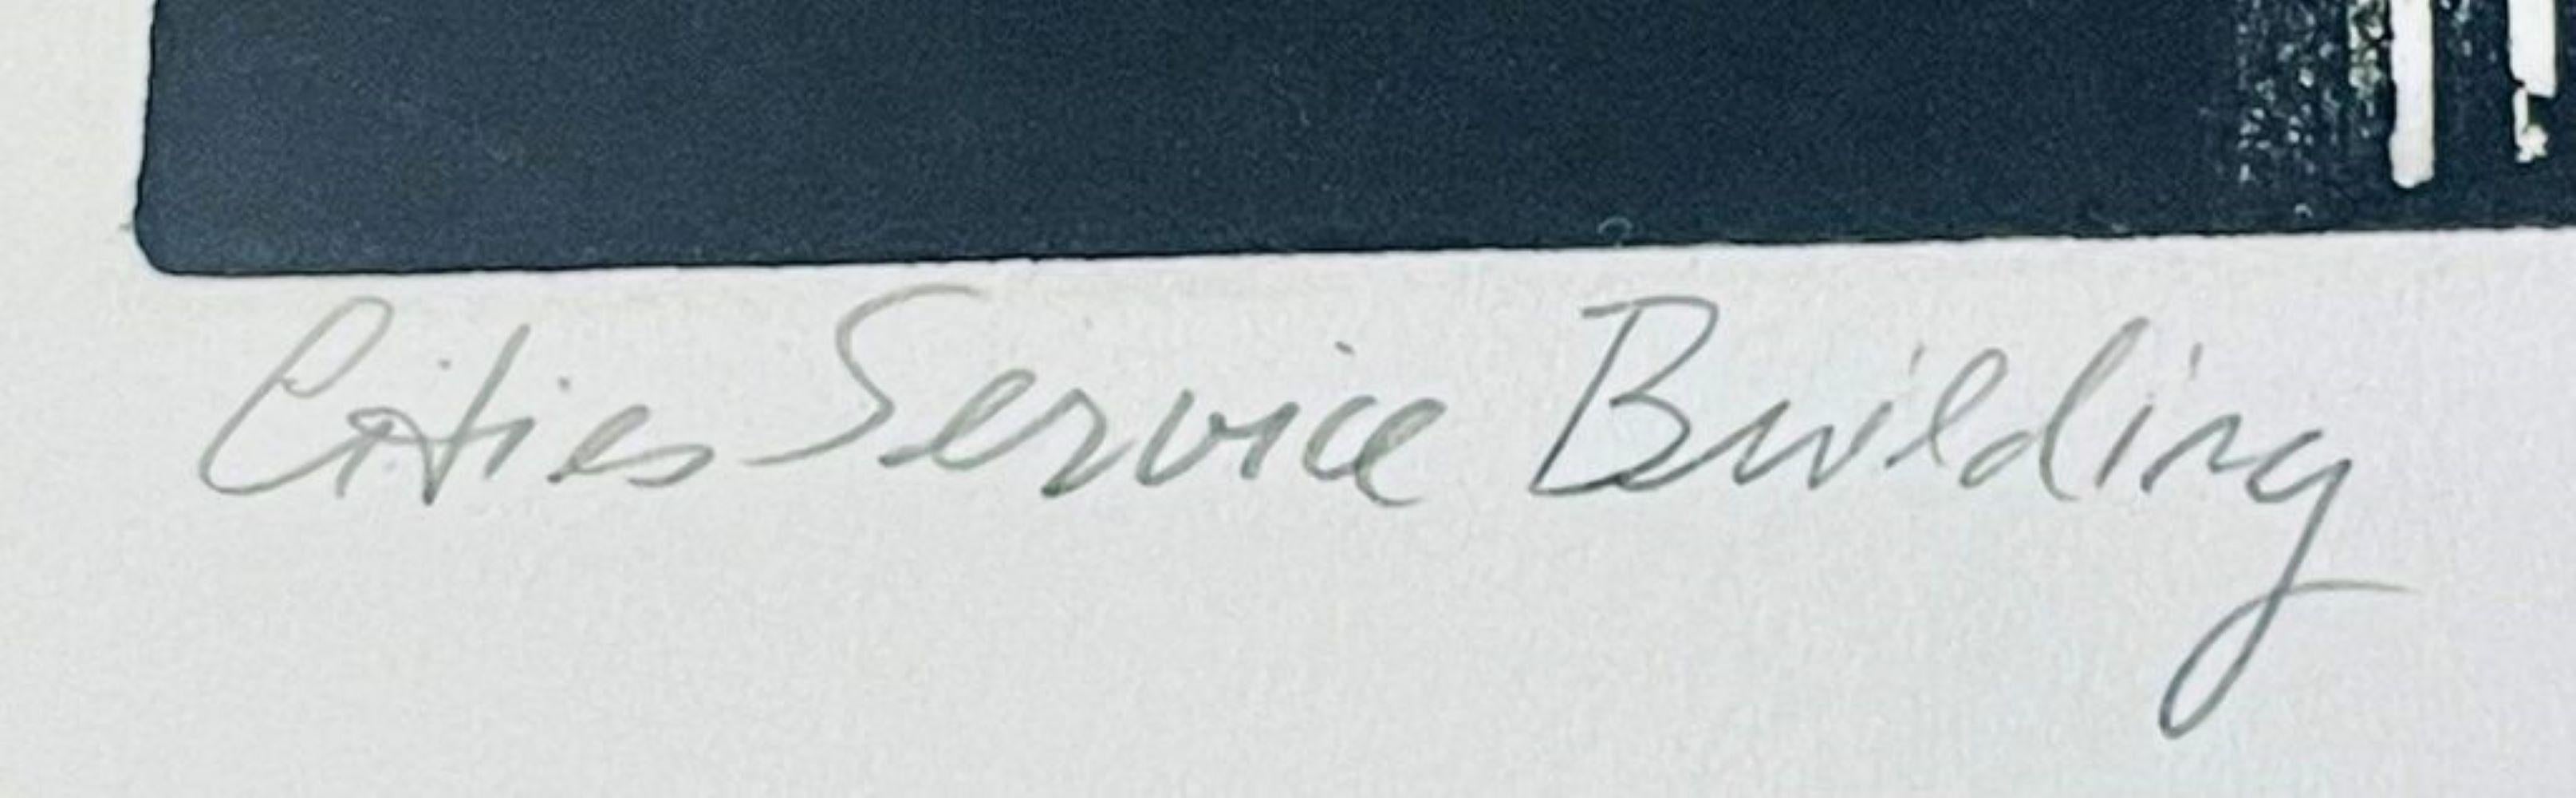 Richard Haas
Städtisches Dienstleistungsgebäude (70 Pine Street, Manhattan), 2005
Ätzen
Signiert, betitelt, datiert und nummeriert 7/20 in Bleistift auf der Vorderseite
20 × 16 Zoll
Ungerahmt
Seltener Druck von Richard Haas - dem weltweit führenden